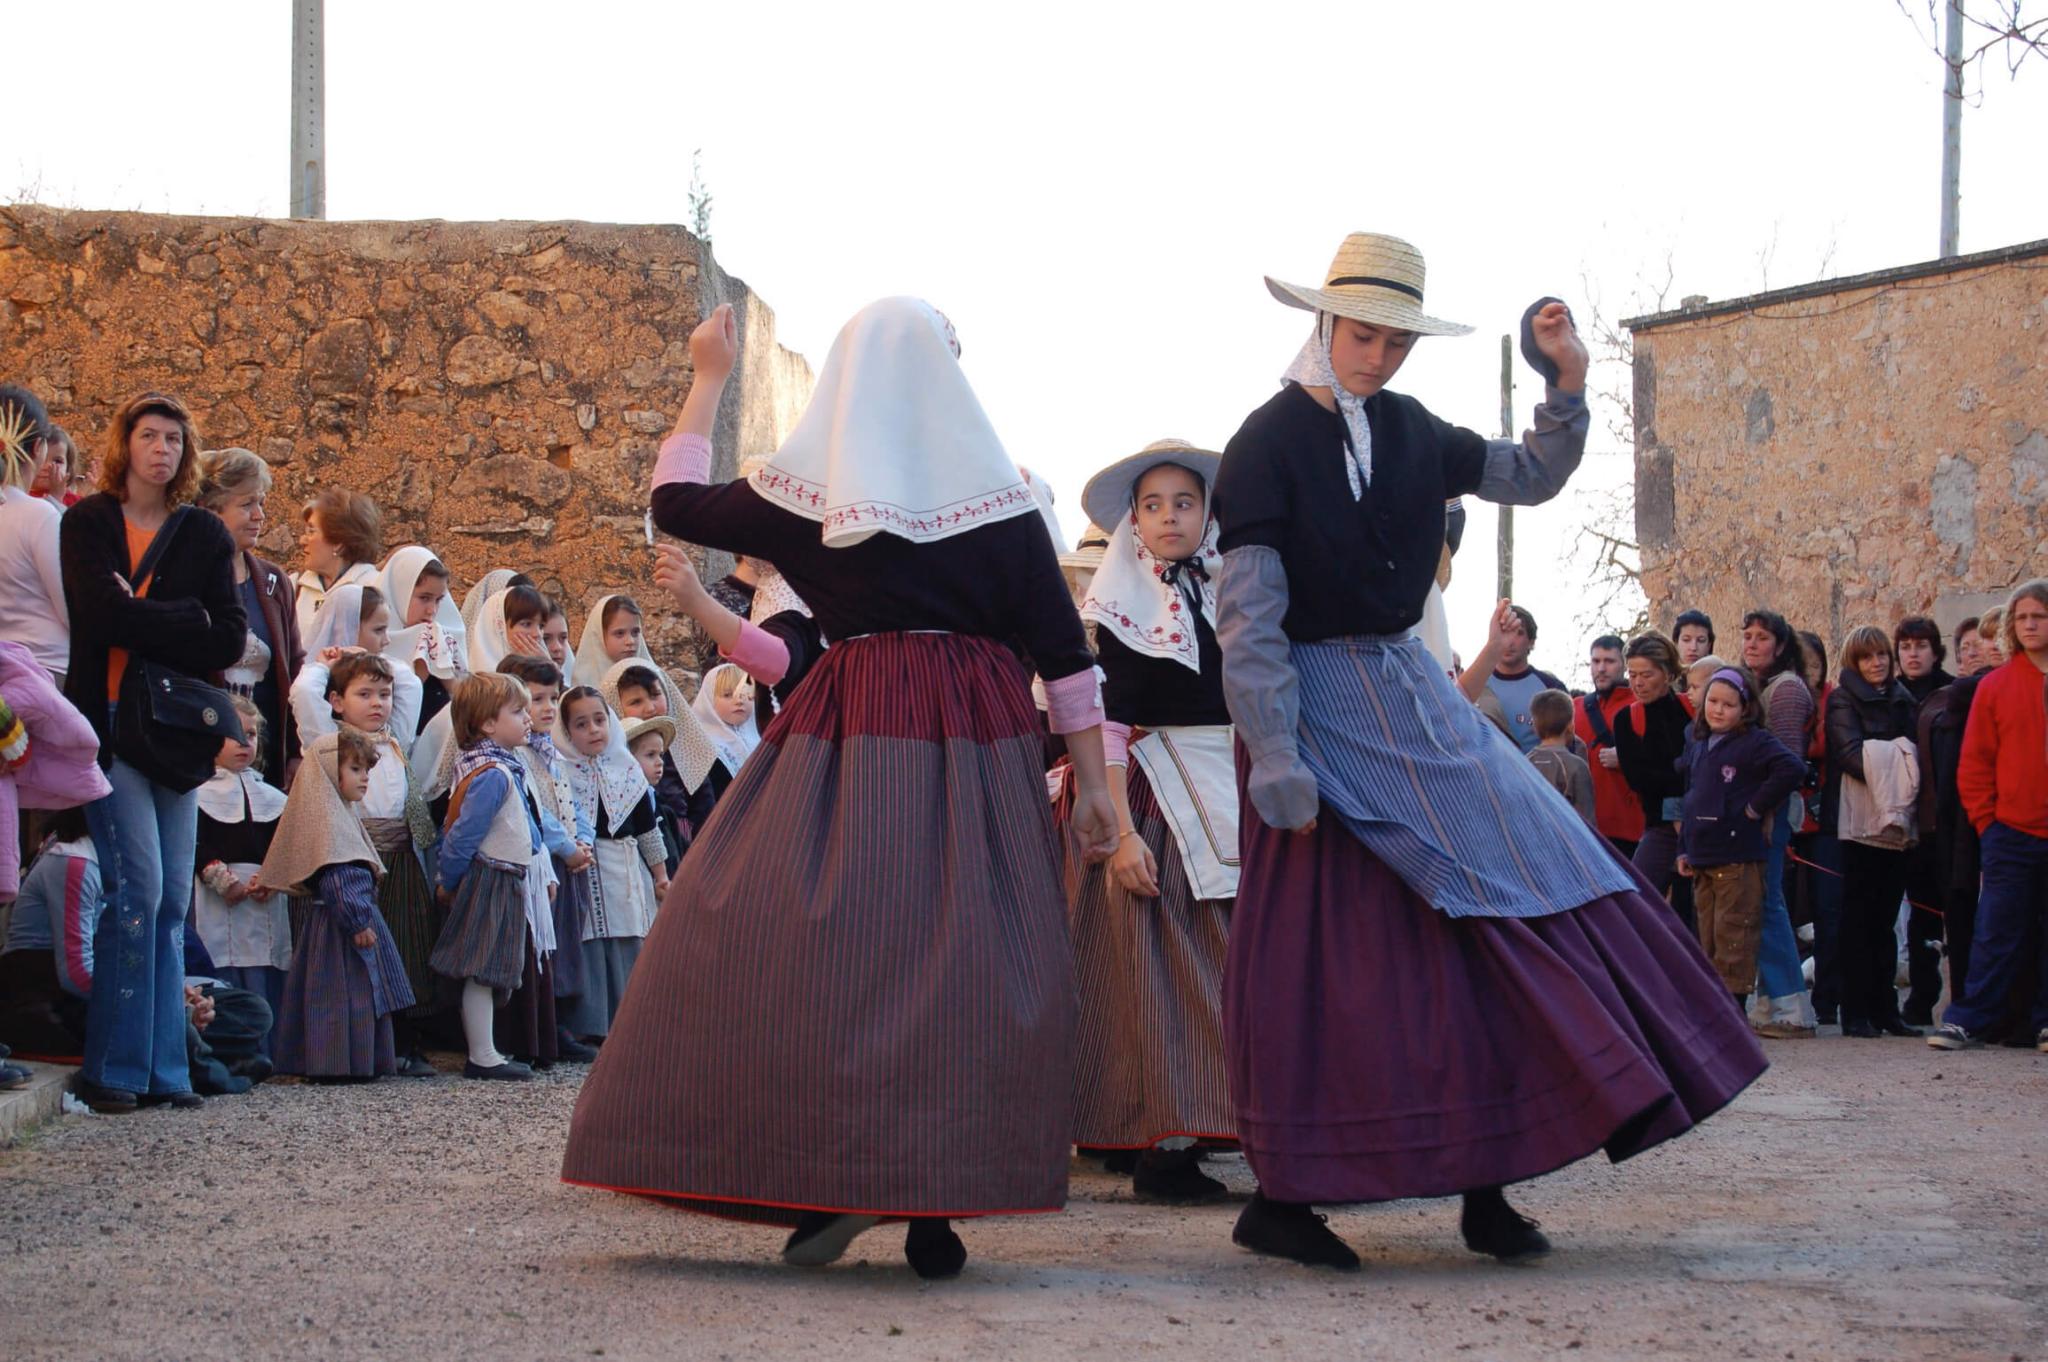 Dos personas bailando un baile tradicional mallorquin